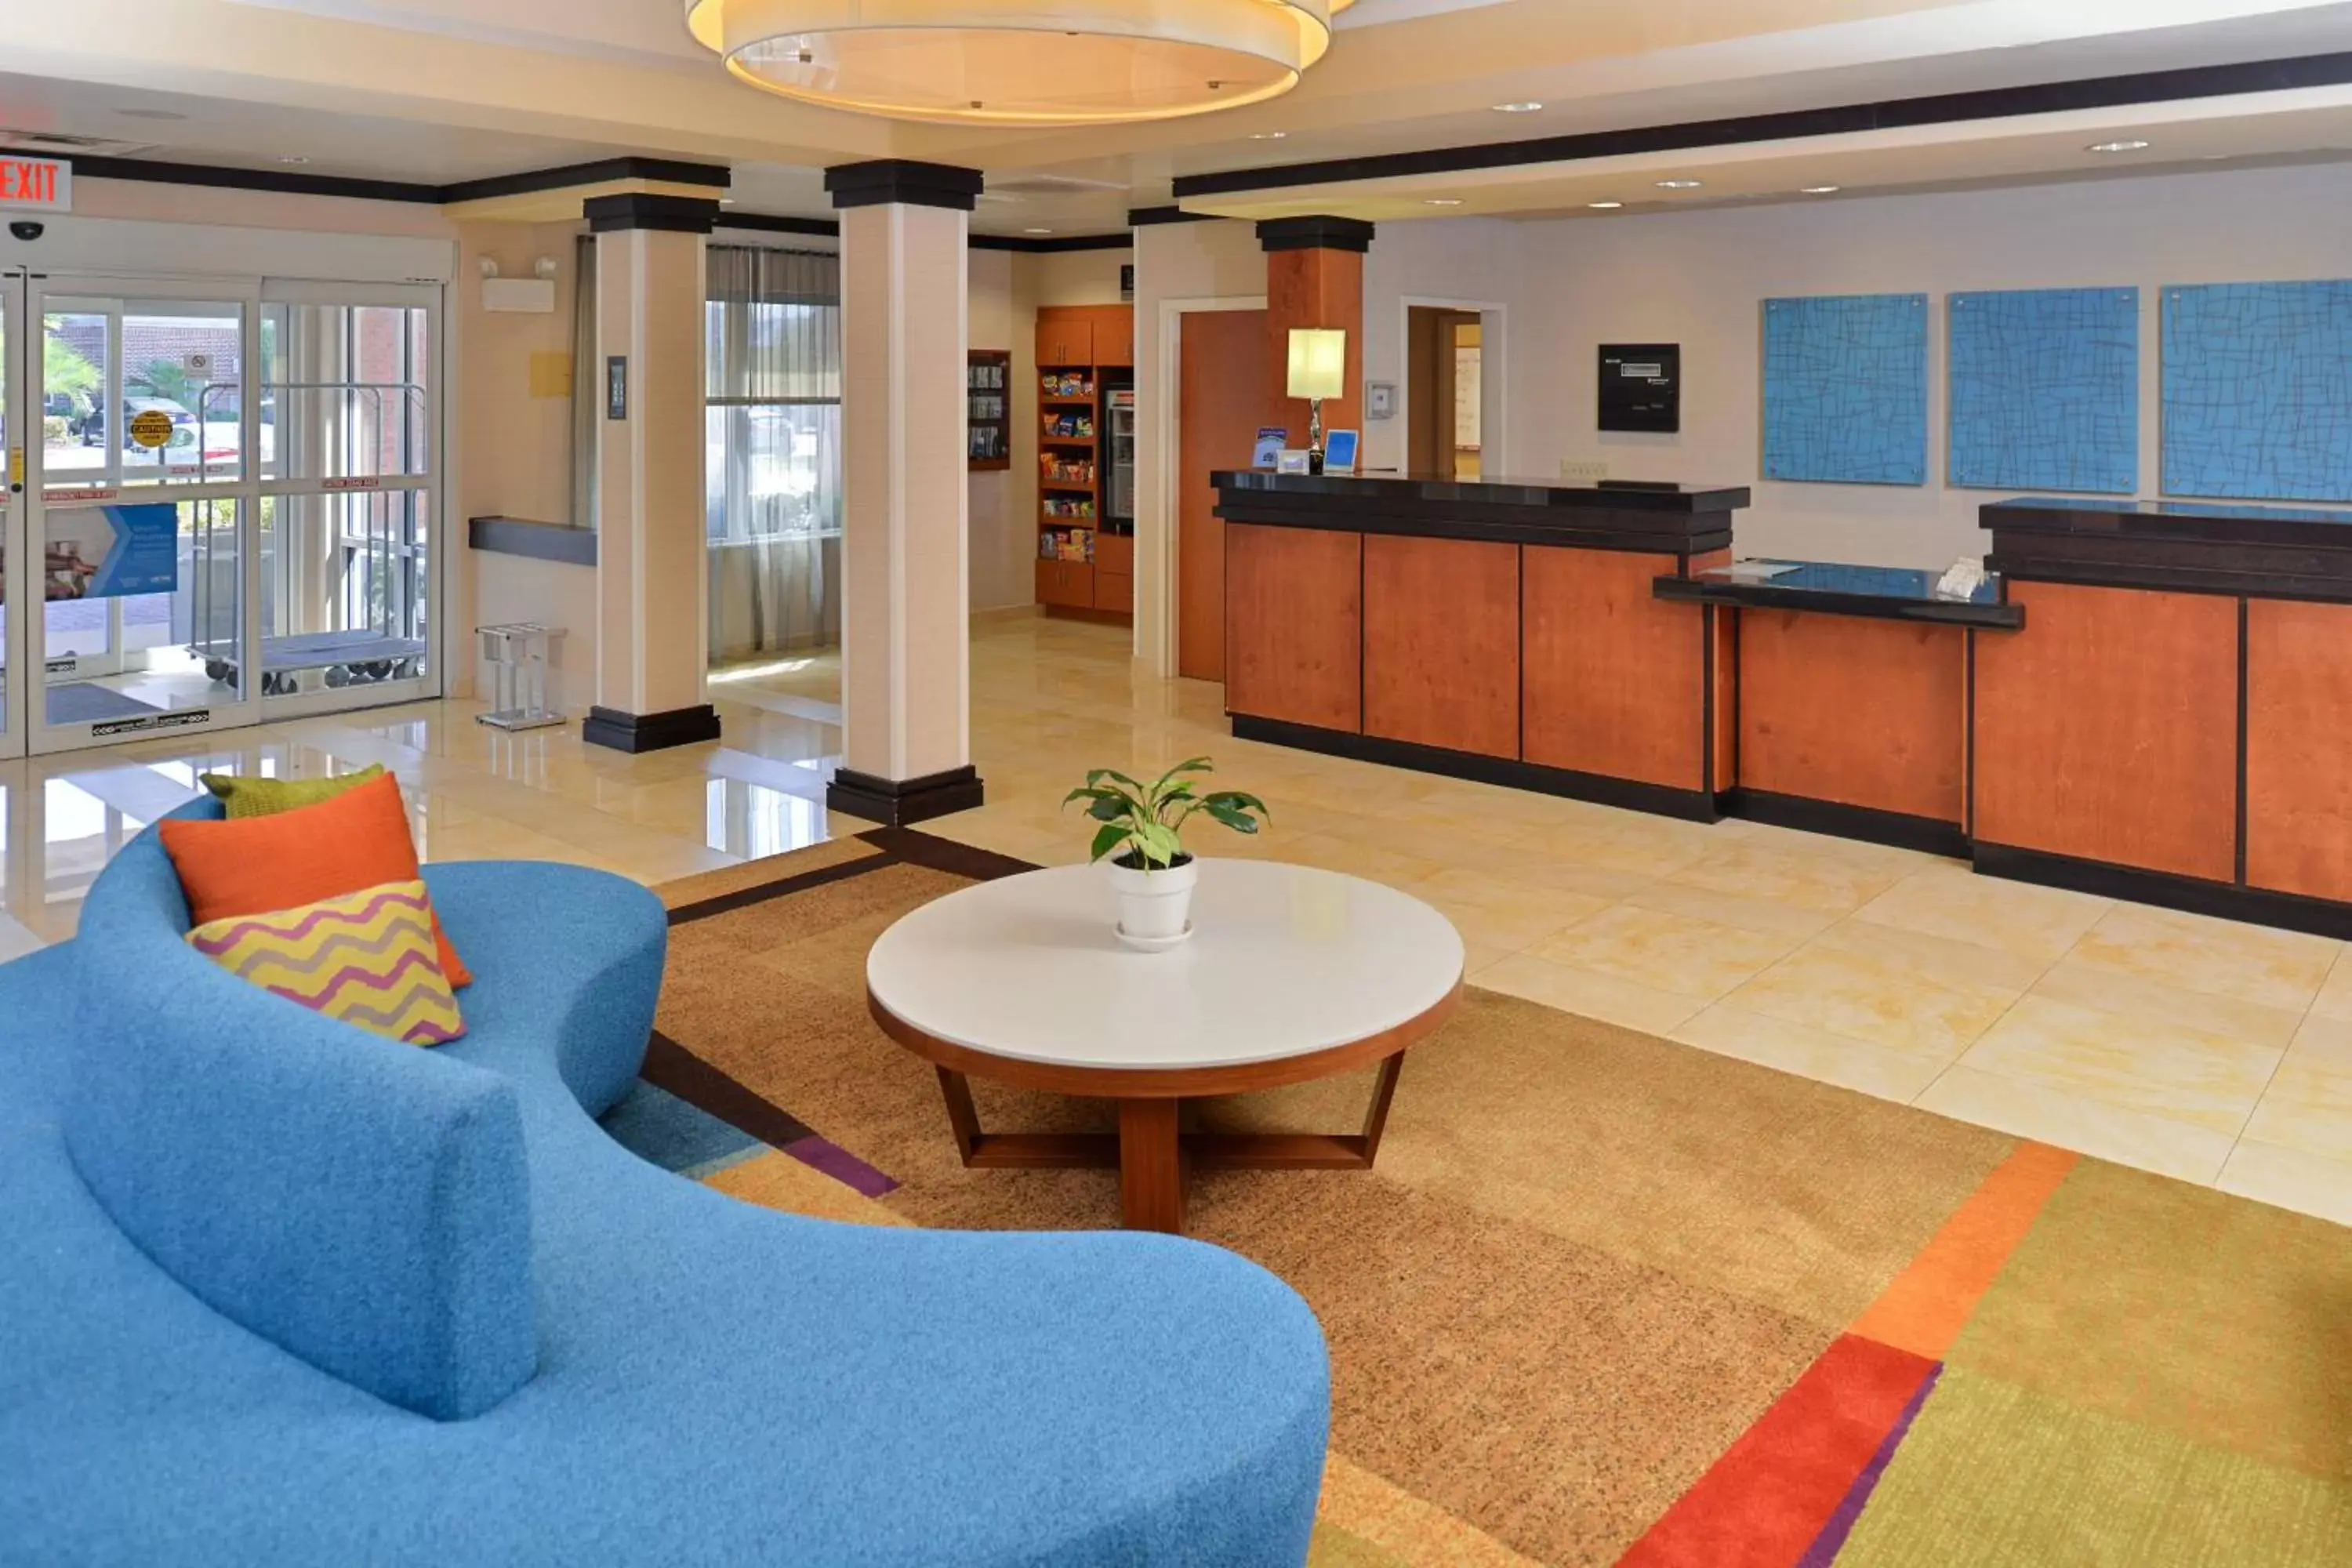 Lobby or reception, Lobby/Reception in Fairfield Inn & Suites Kingsland